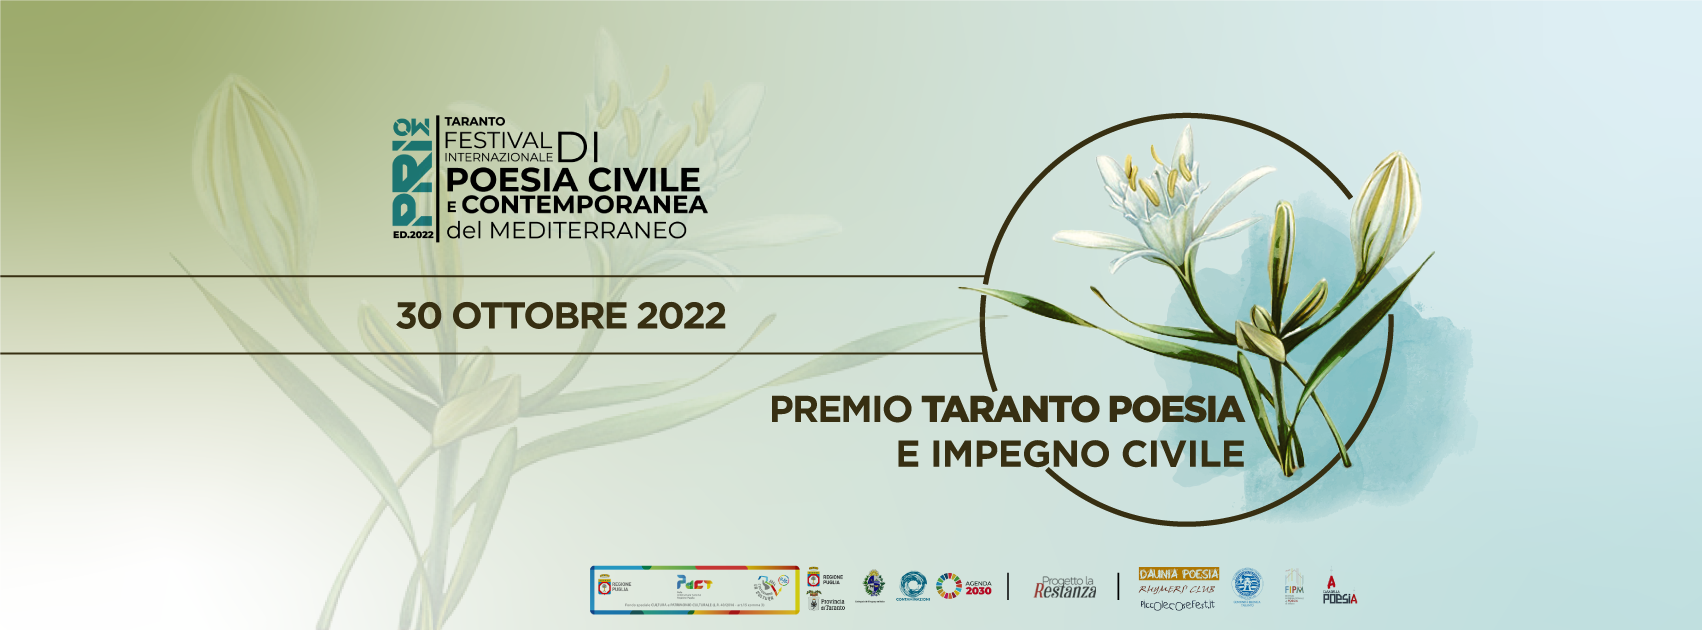 Foto 1 - Premio Taranto Poesia e Impegno Civile: Taranto dal respiro internazionale grazie a 'Primo' Festival